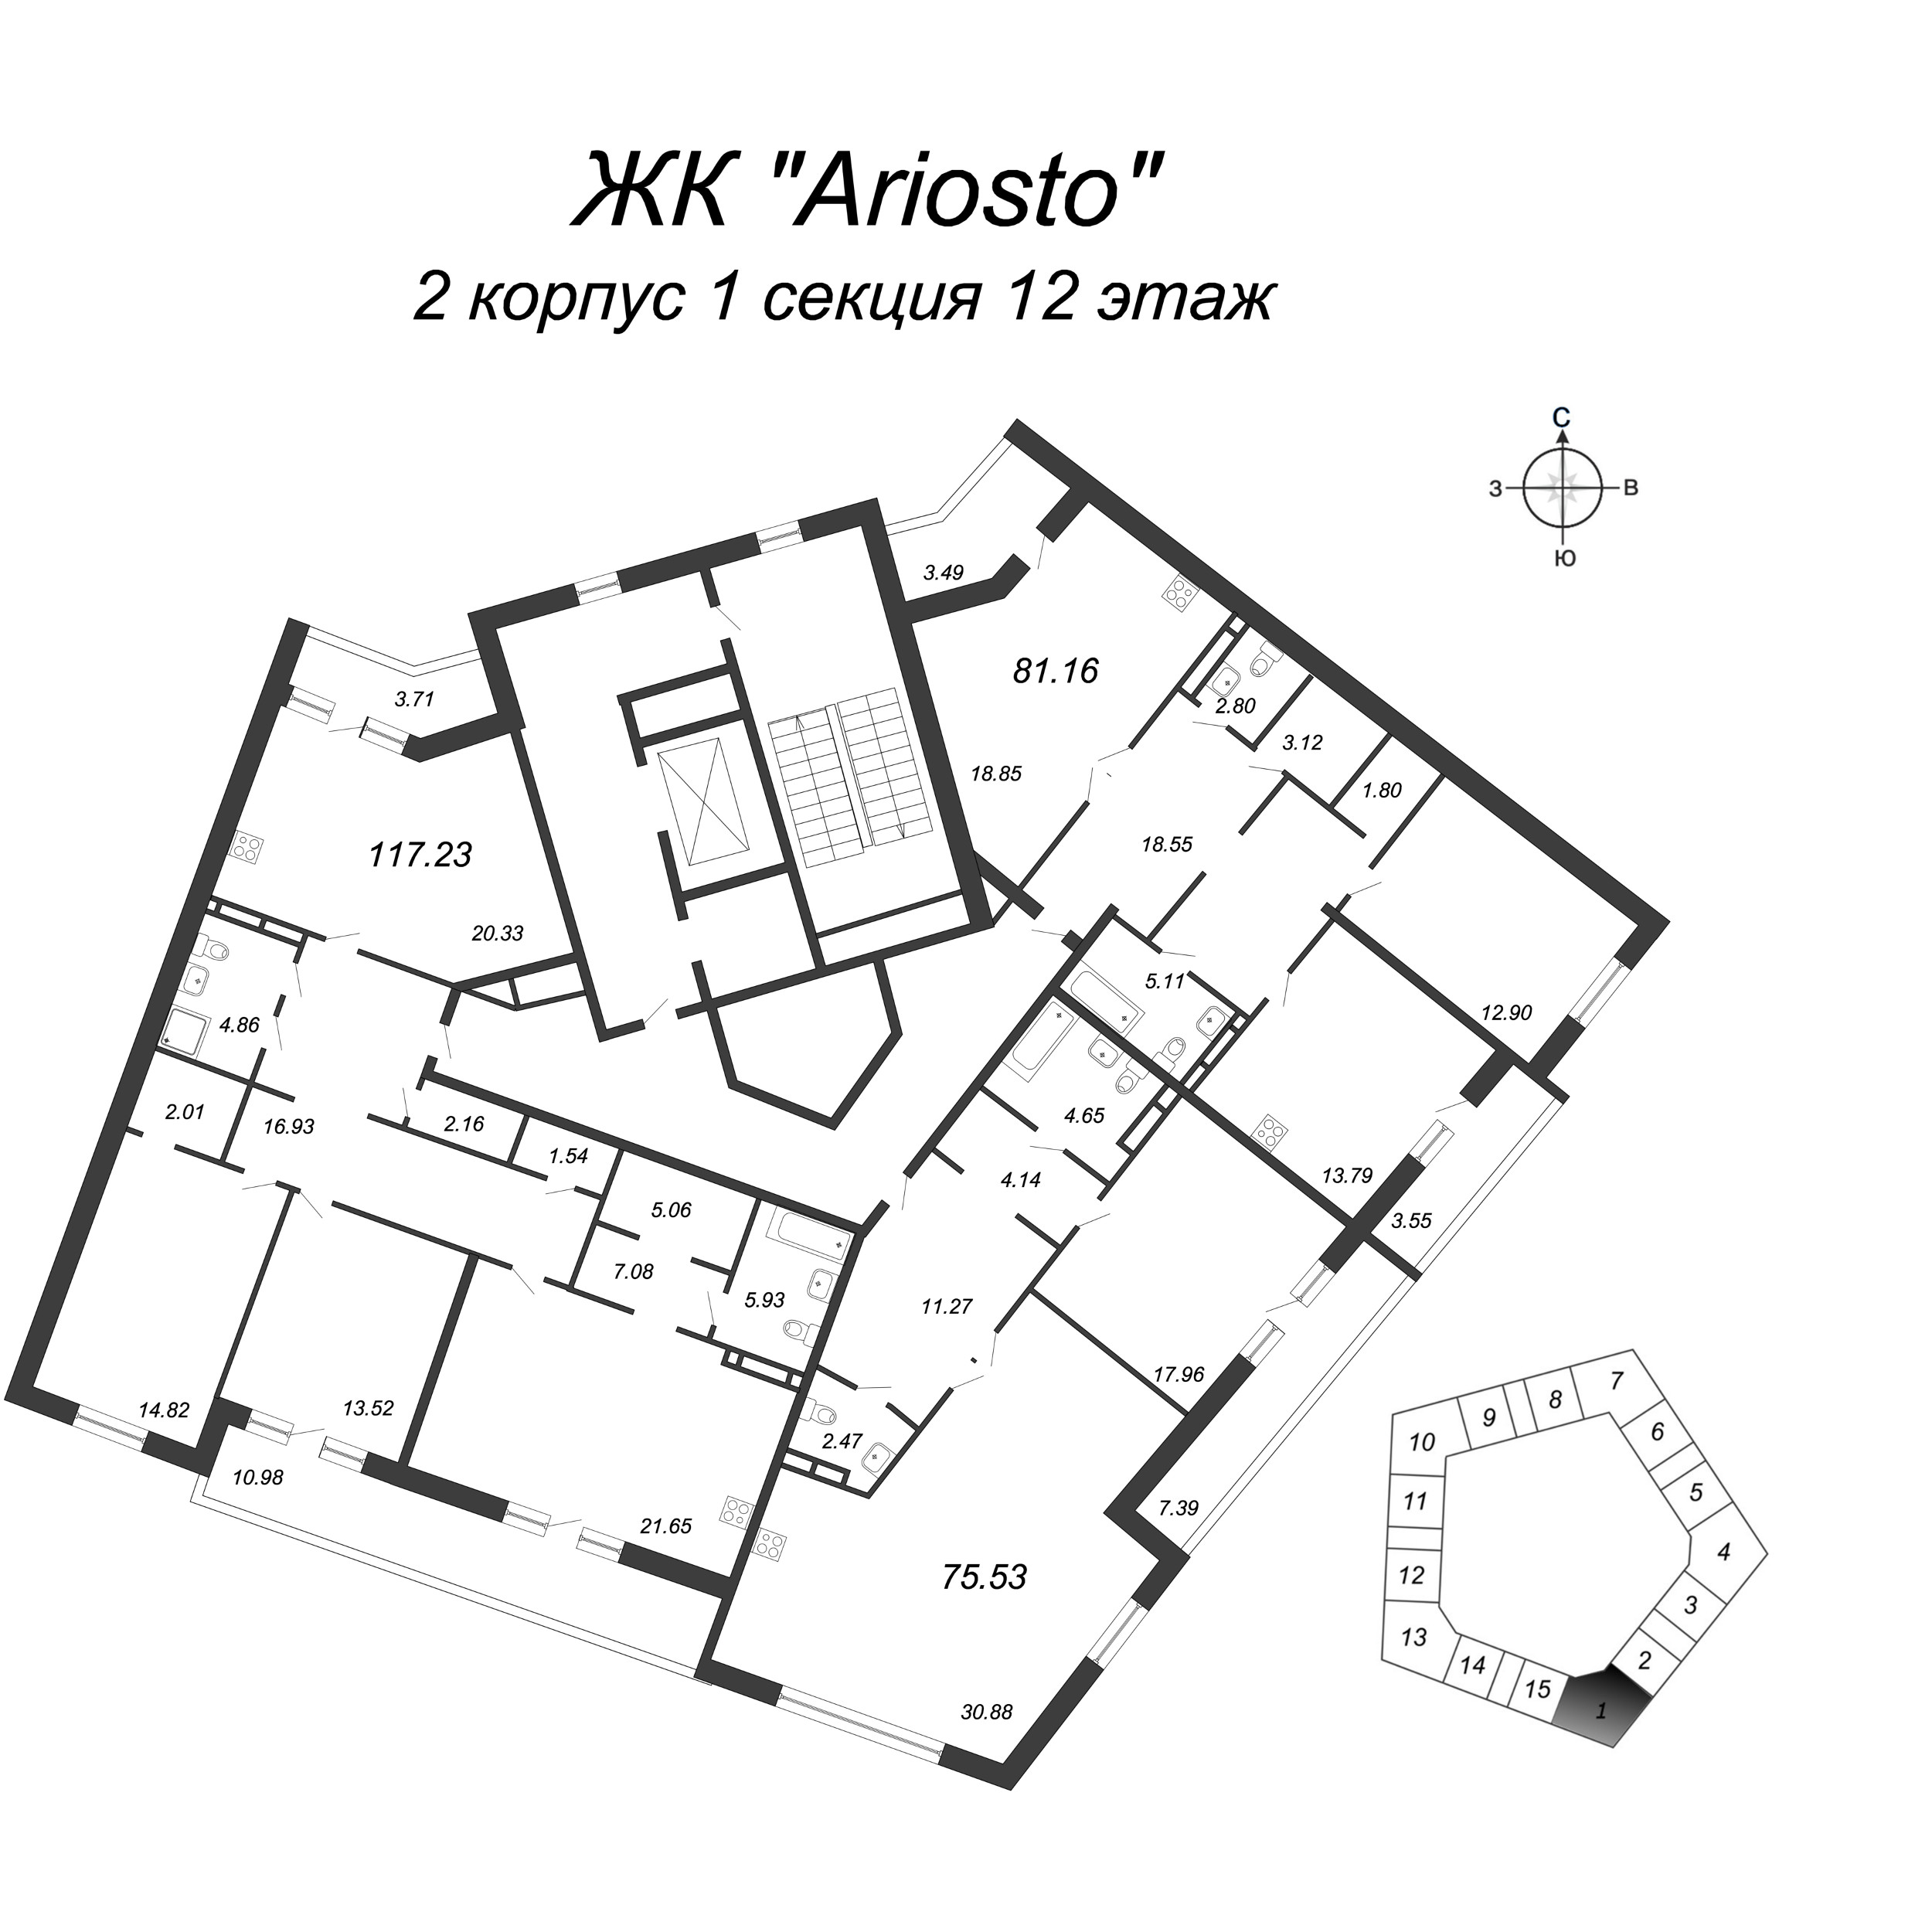 4-комнатная (Евро) квартира, 117.23 м² в ЖК "Ariosto" - планировка этажа